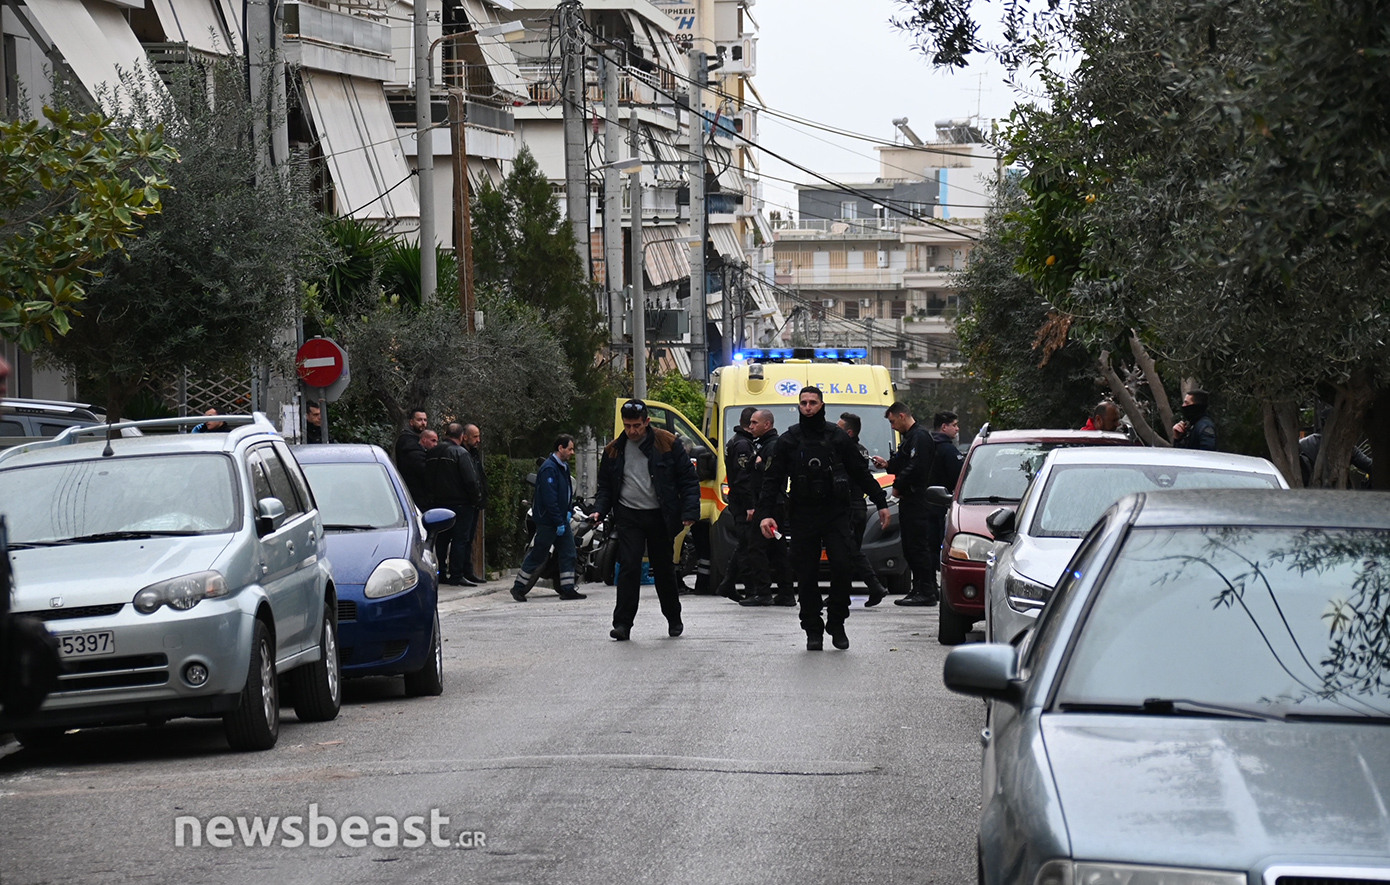 Αποφασισμένος ήρθε από τη Θεσσαλονίκη ο 64χρονος που σκότωσε τον γαμπρό του στη Νίκαια